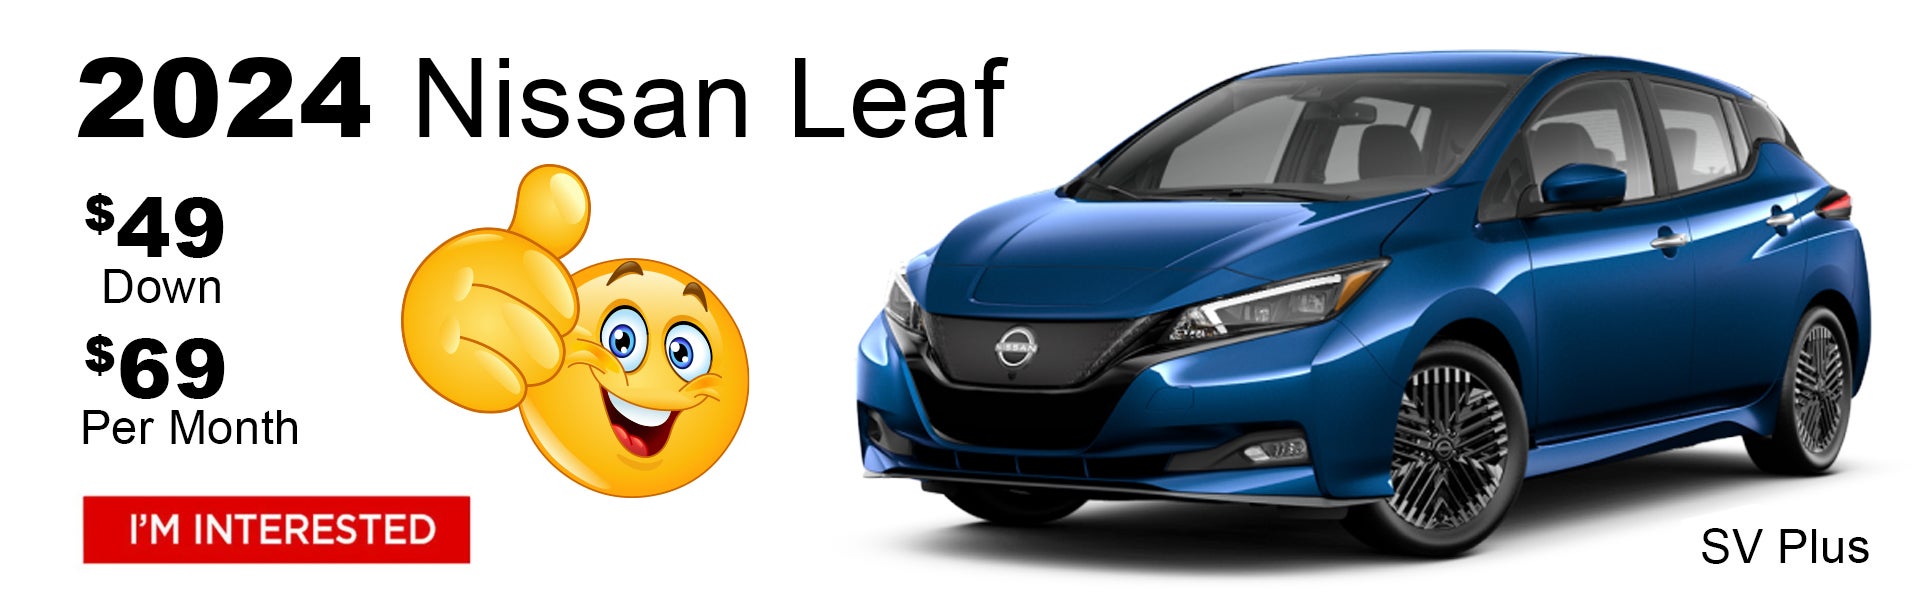 New Nissan Leaf $49 Dealer Special